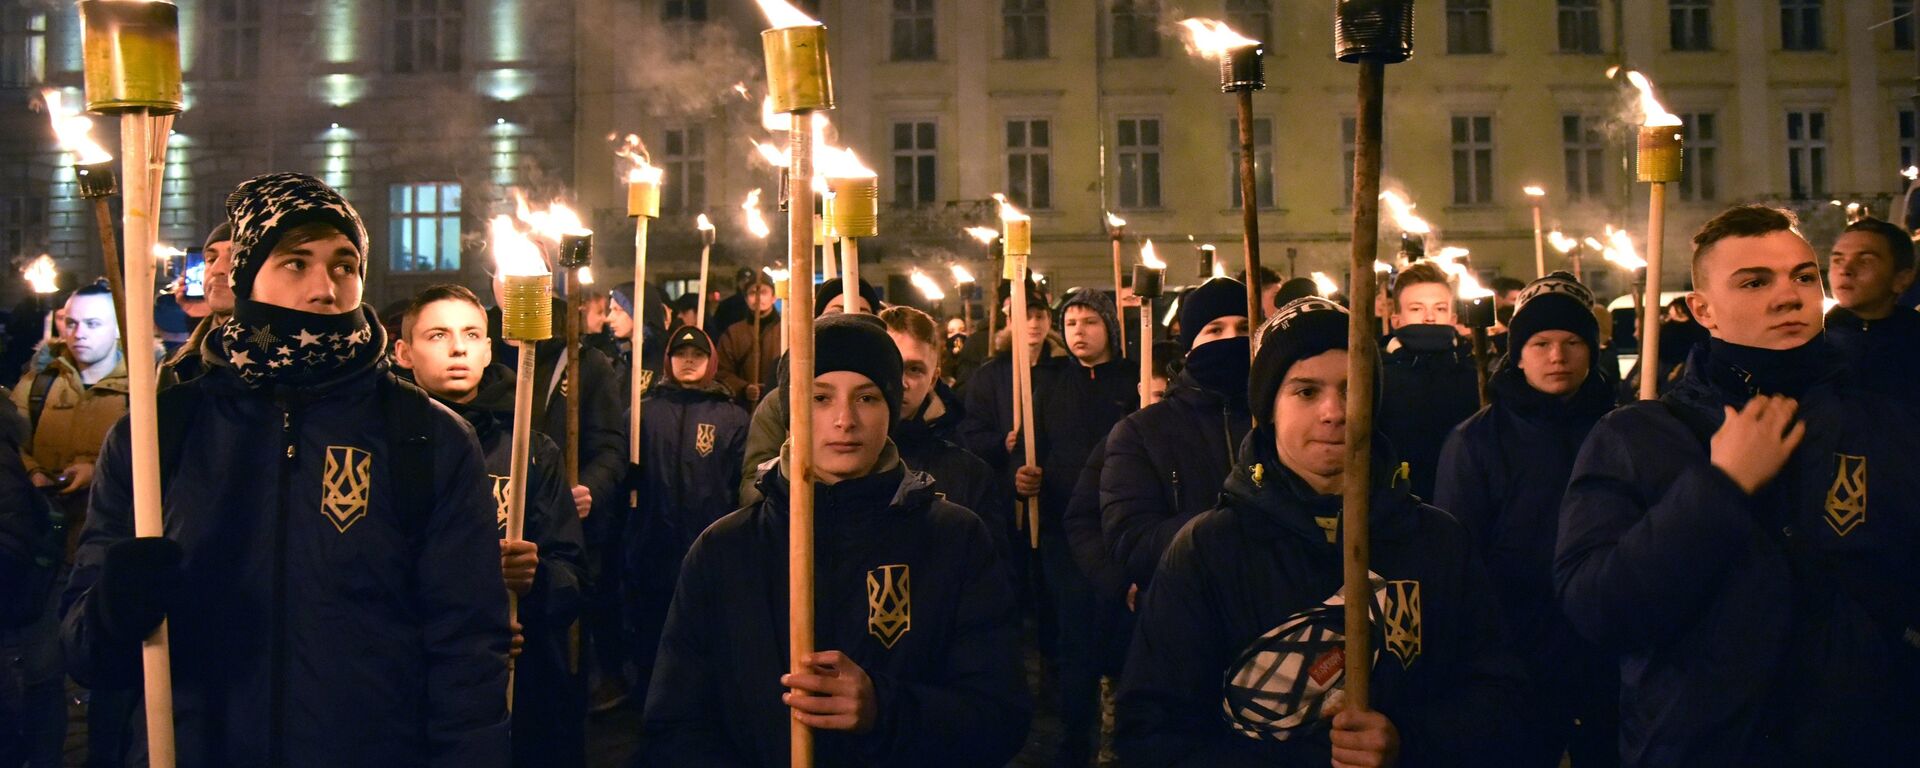 Ukraynalılar, Nazi işbirlikçisi Bandera'yı anmak için sokağa çıktı - Sputnik Türkiye, 1920, 23.03.2022